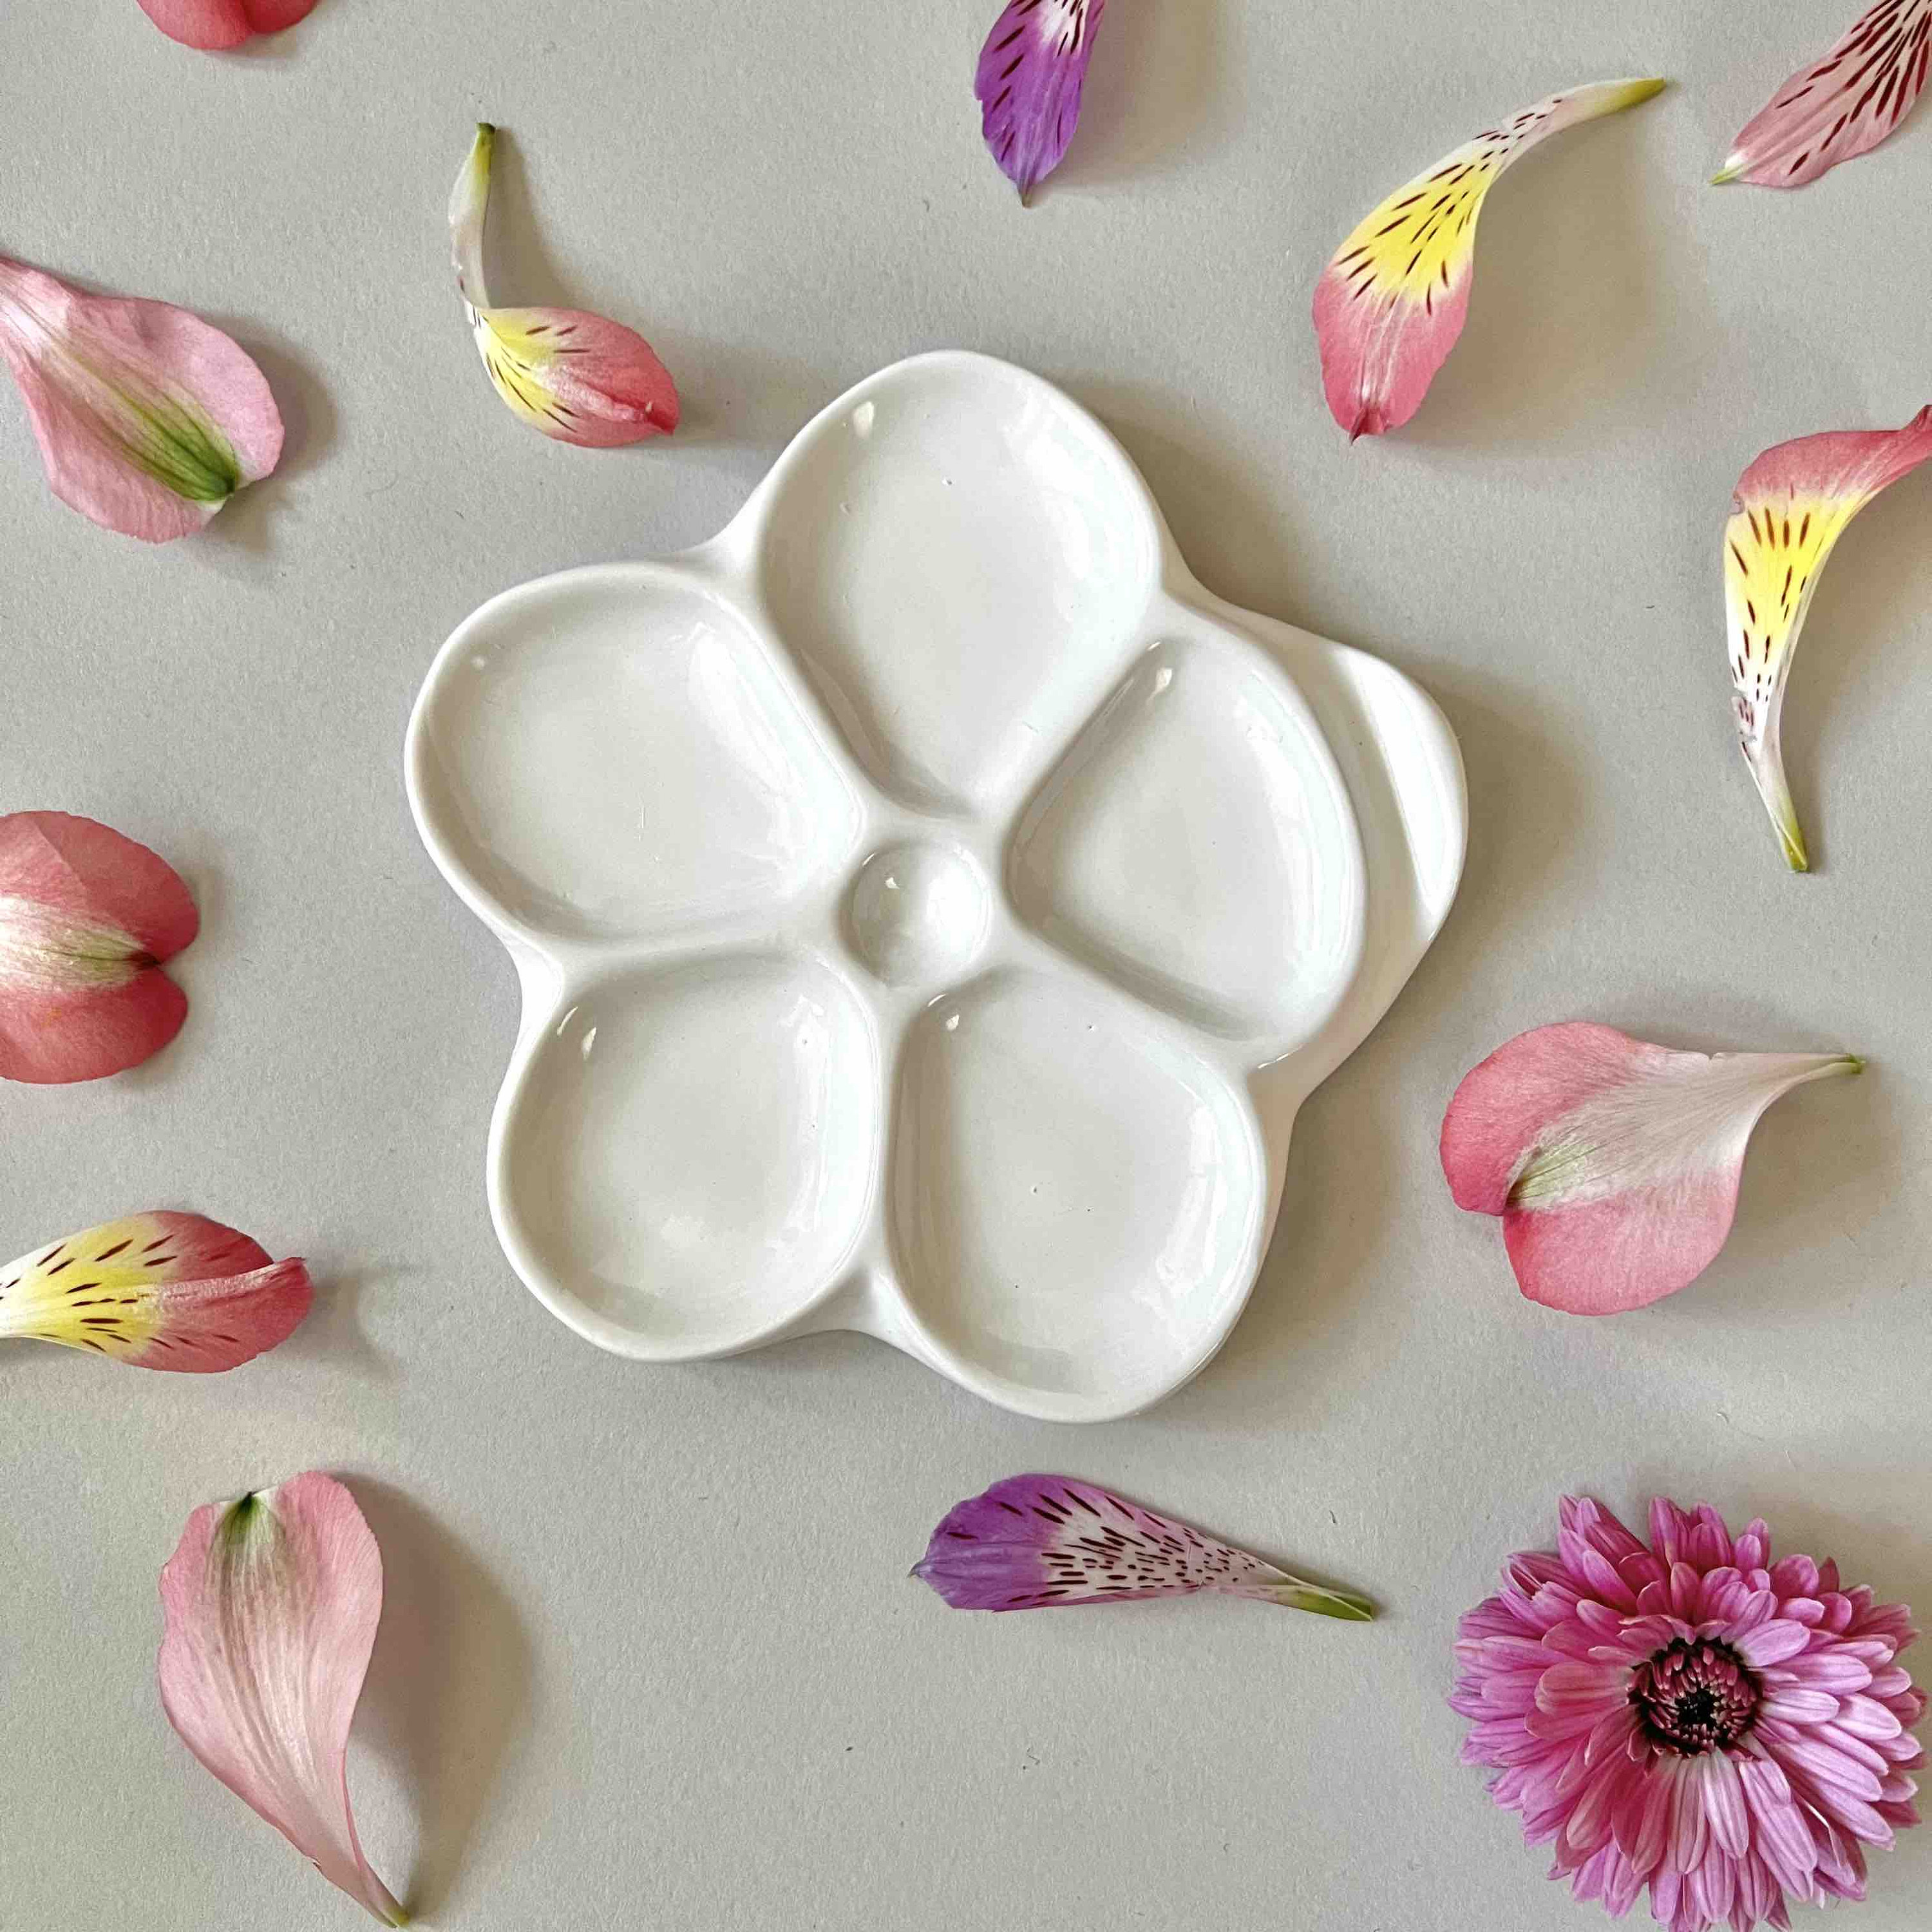 Flower Plum Rectangle Ceramic Palette Color Mixing Paint Palette